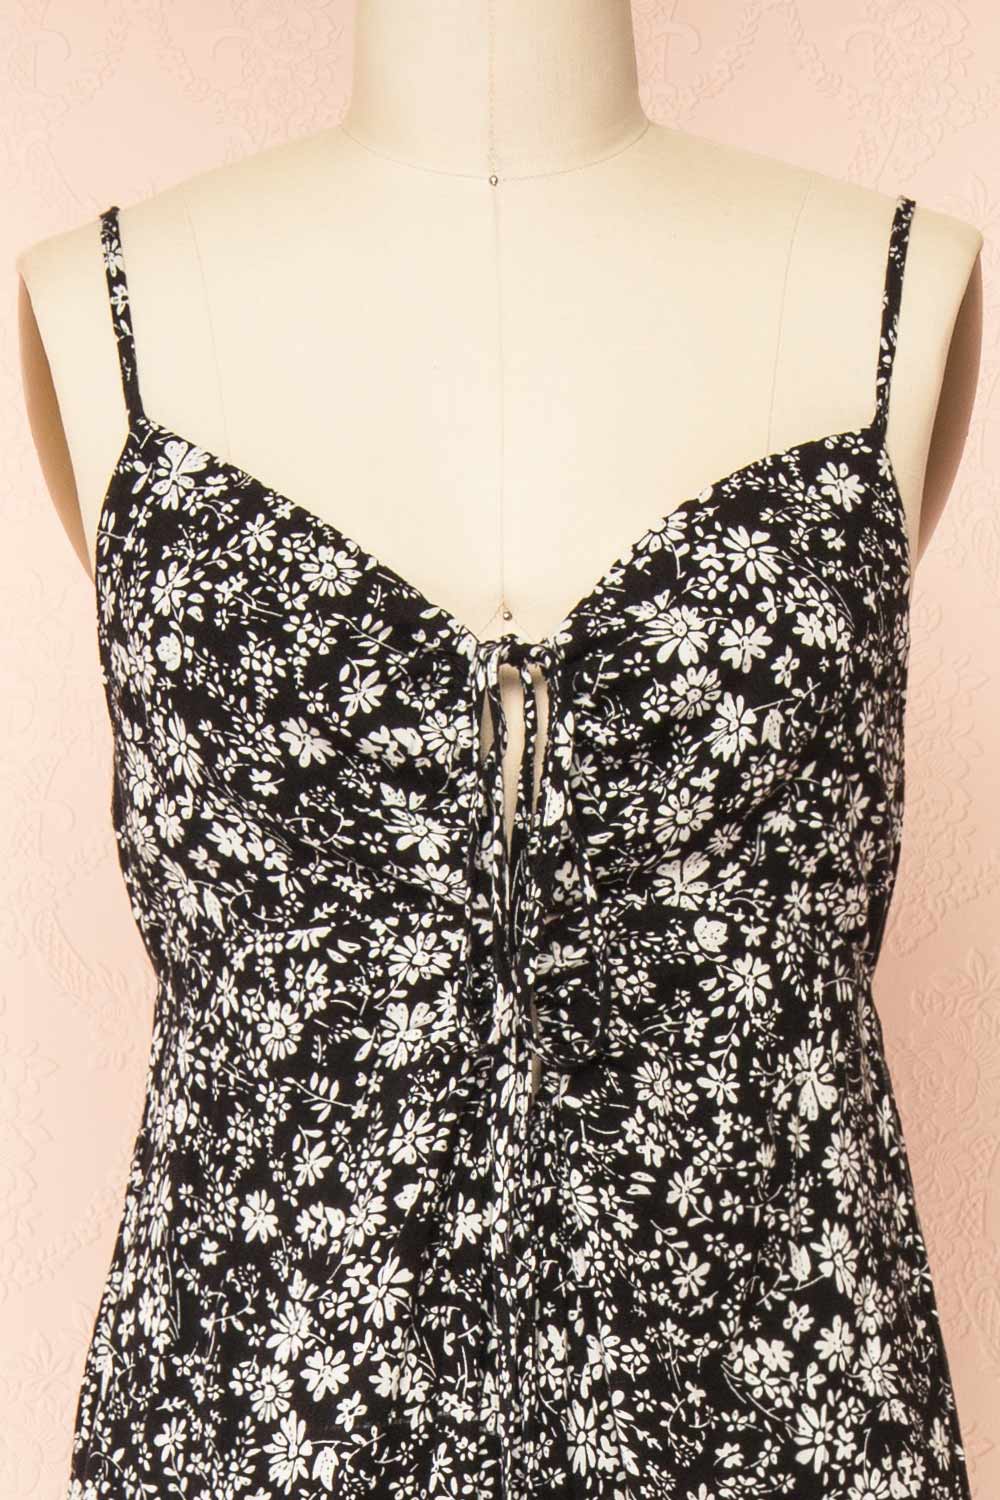 Hecate Black Jumpsuit w/ White Floral Motif | Boutique 1861 front